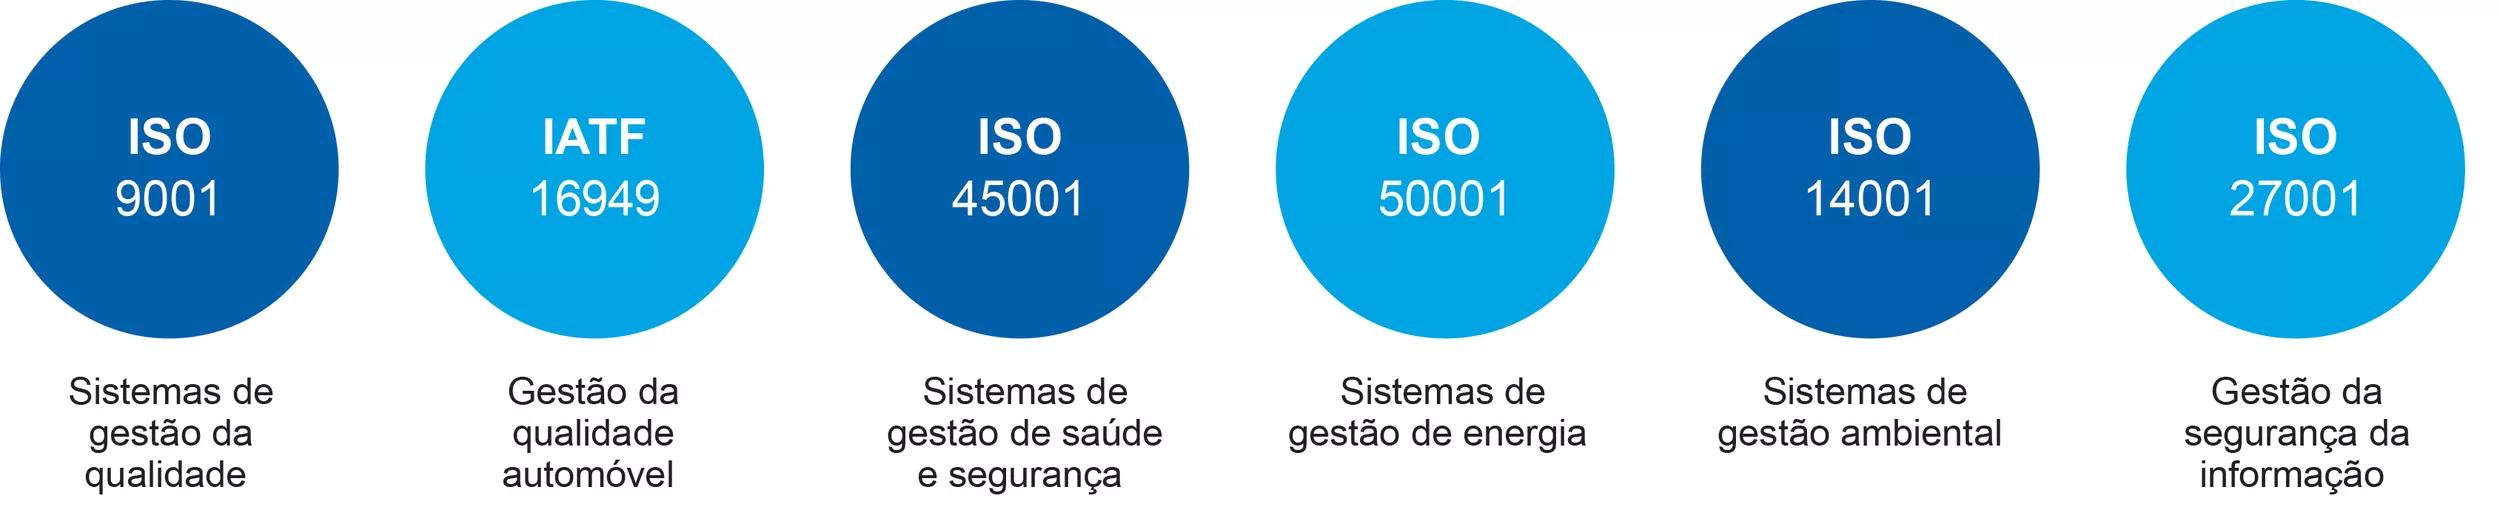 ISO PT